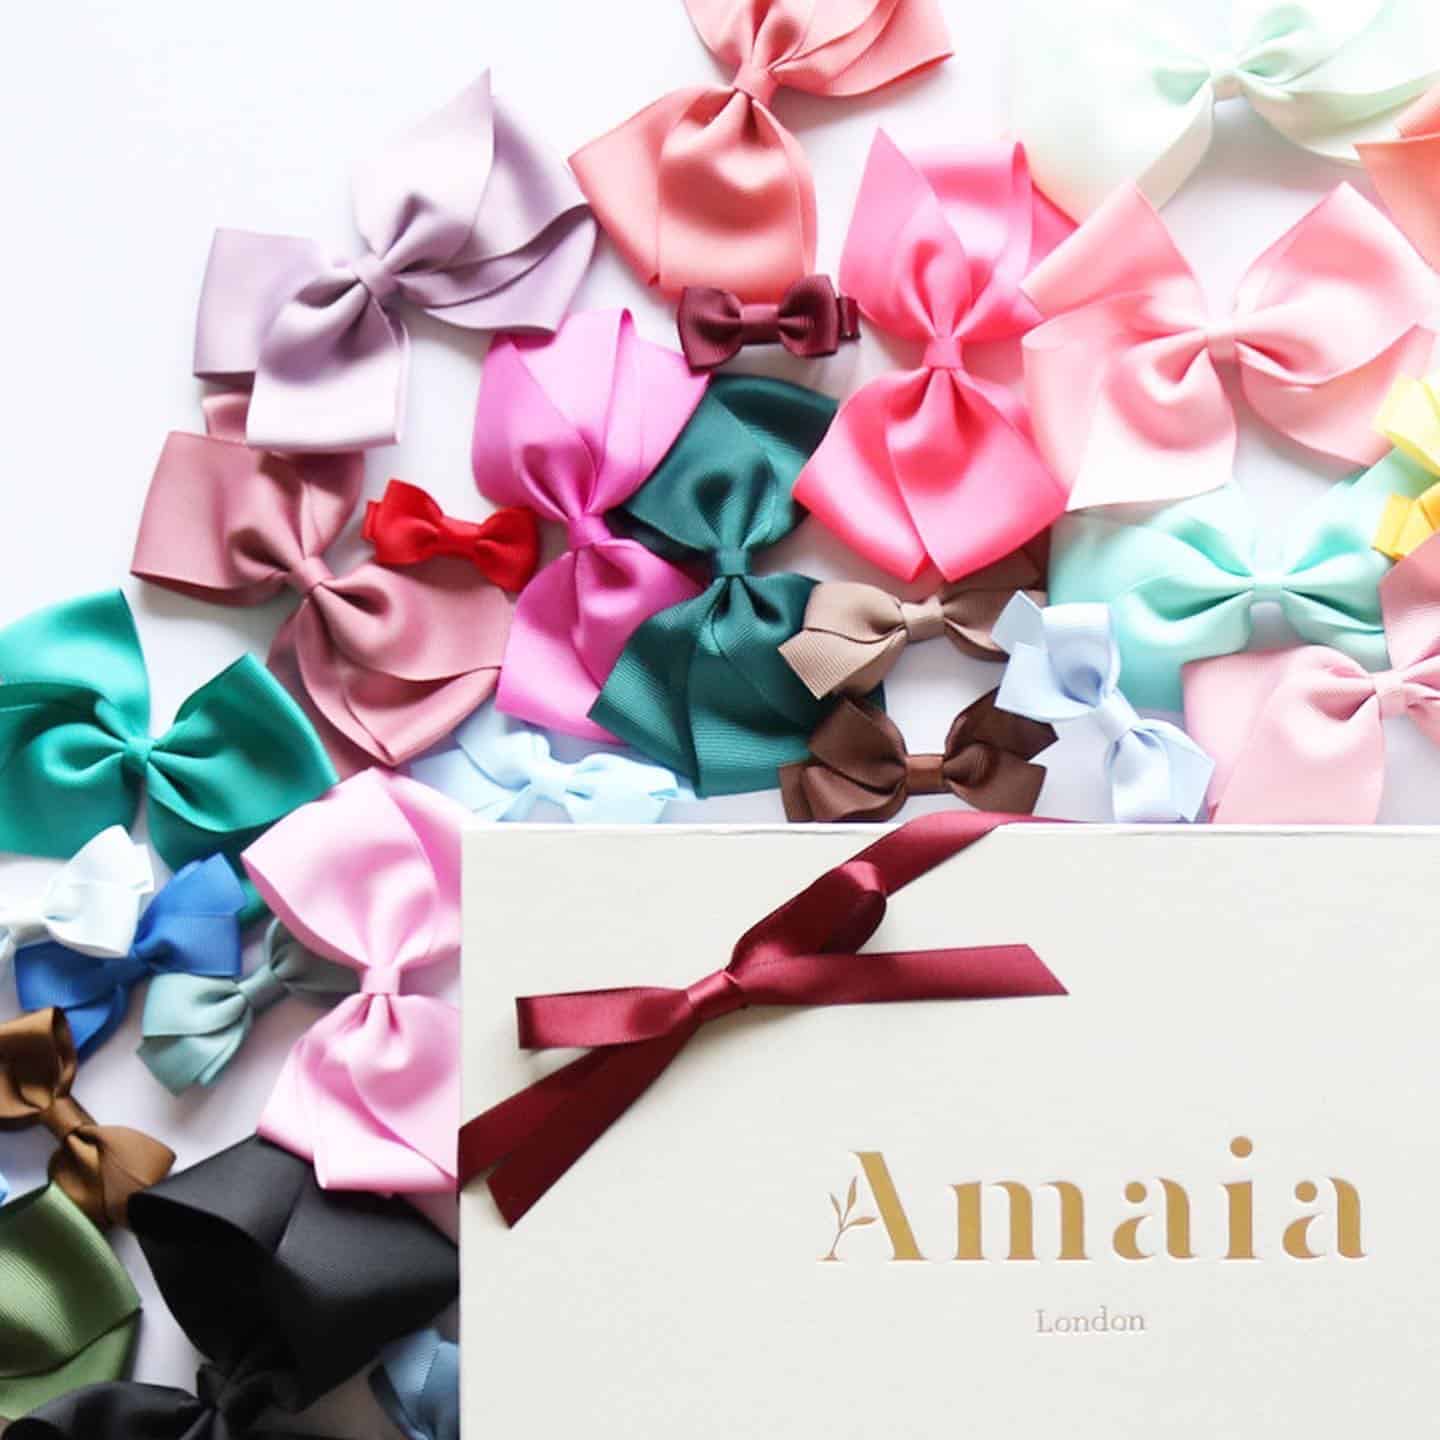 ヘアクリップ 全67色⁡大人気のAmaiaヘアクリップを入荷いたしました❣️⁡オンラインストアにてご覧いただけます♪⁡お色選びが楽しいAmaiaのヘアアクセサリー⁡女の子ママたち、お楽しみください🥰⁡ヘアアクセサリーの贈り物には⁡収納ボックスとしても人気の⁡ヘアアクセサリー専用ギフトボックスをご利用ください⁡@amaia_japan⁡▼Online Shophttps://amaia.jp